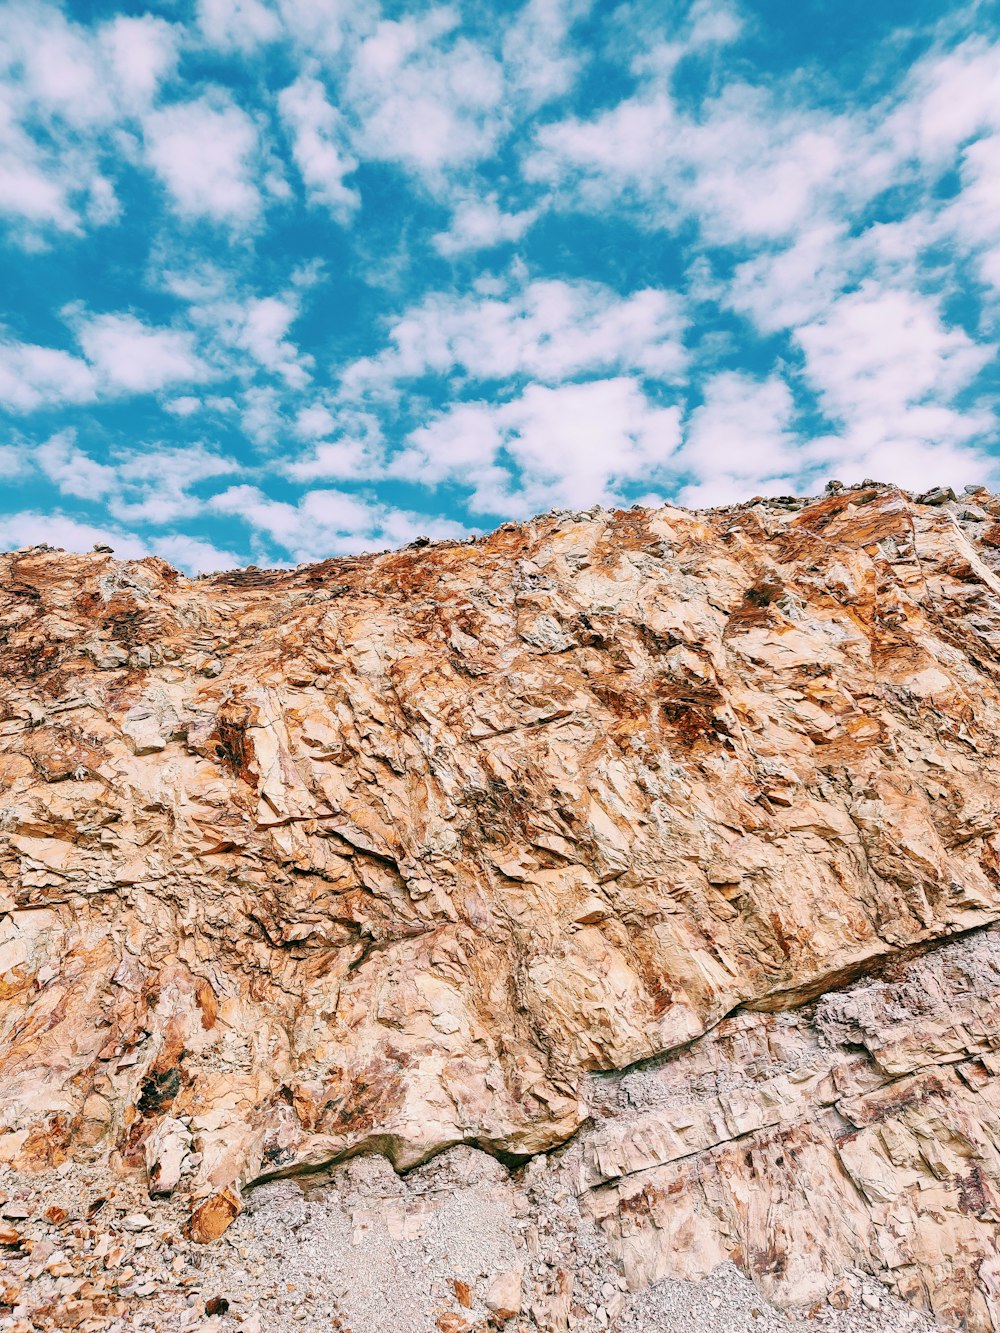 昼間の青空と白い雲の下に茶色の岩層